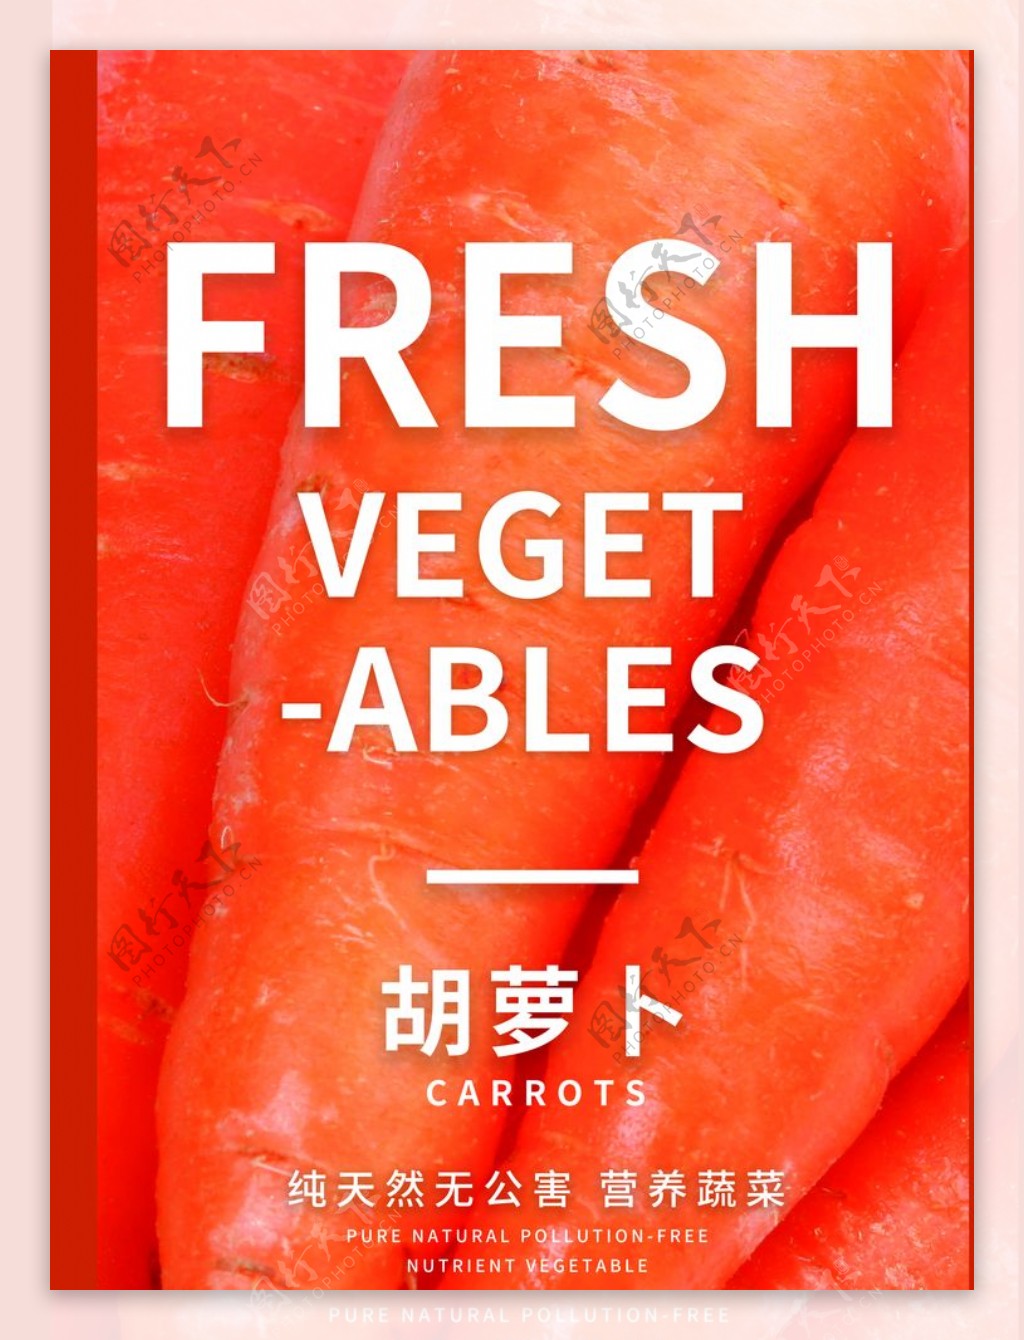 水果海报水果素材蔬菜素材